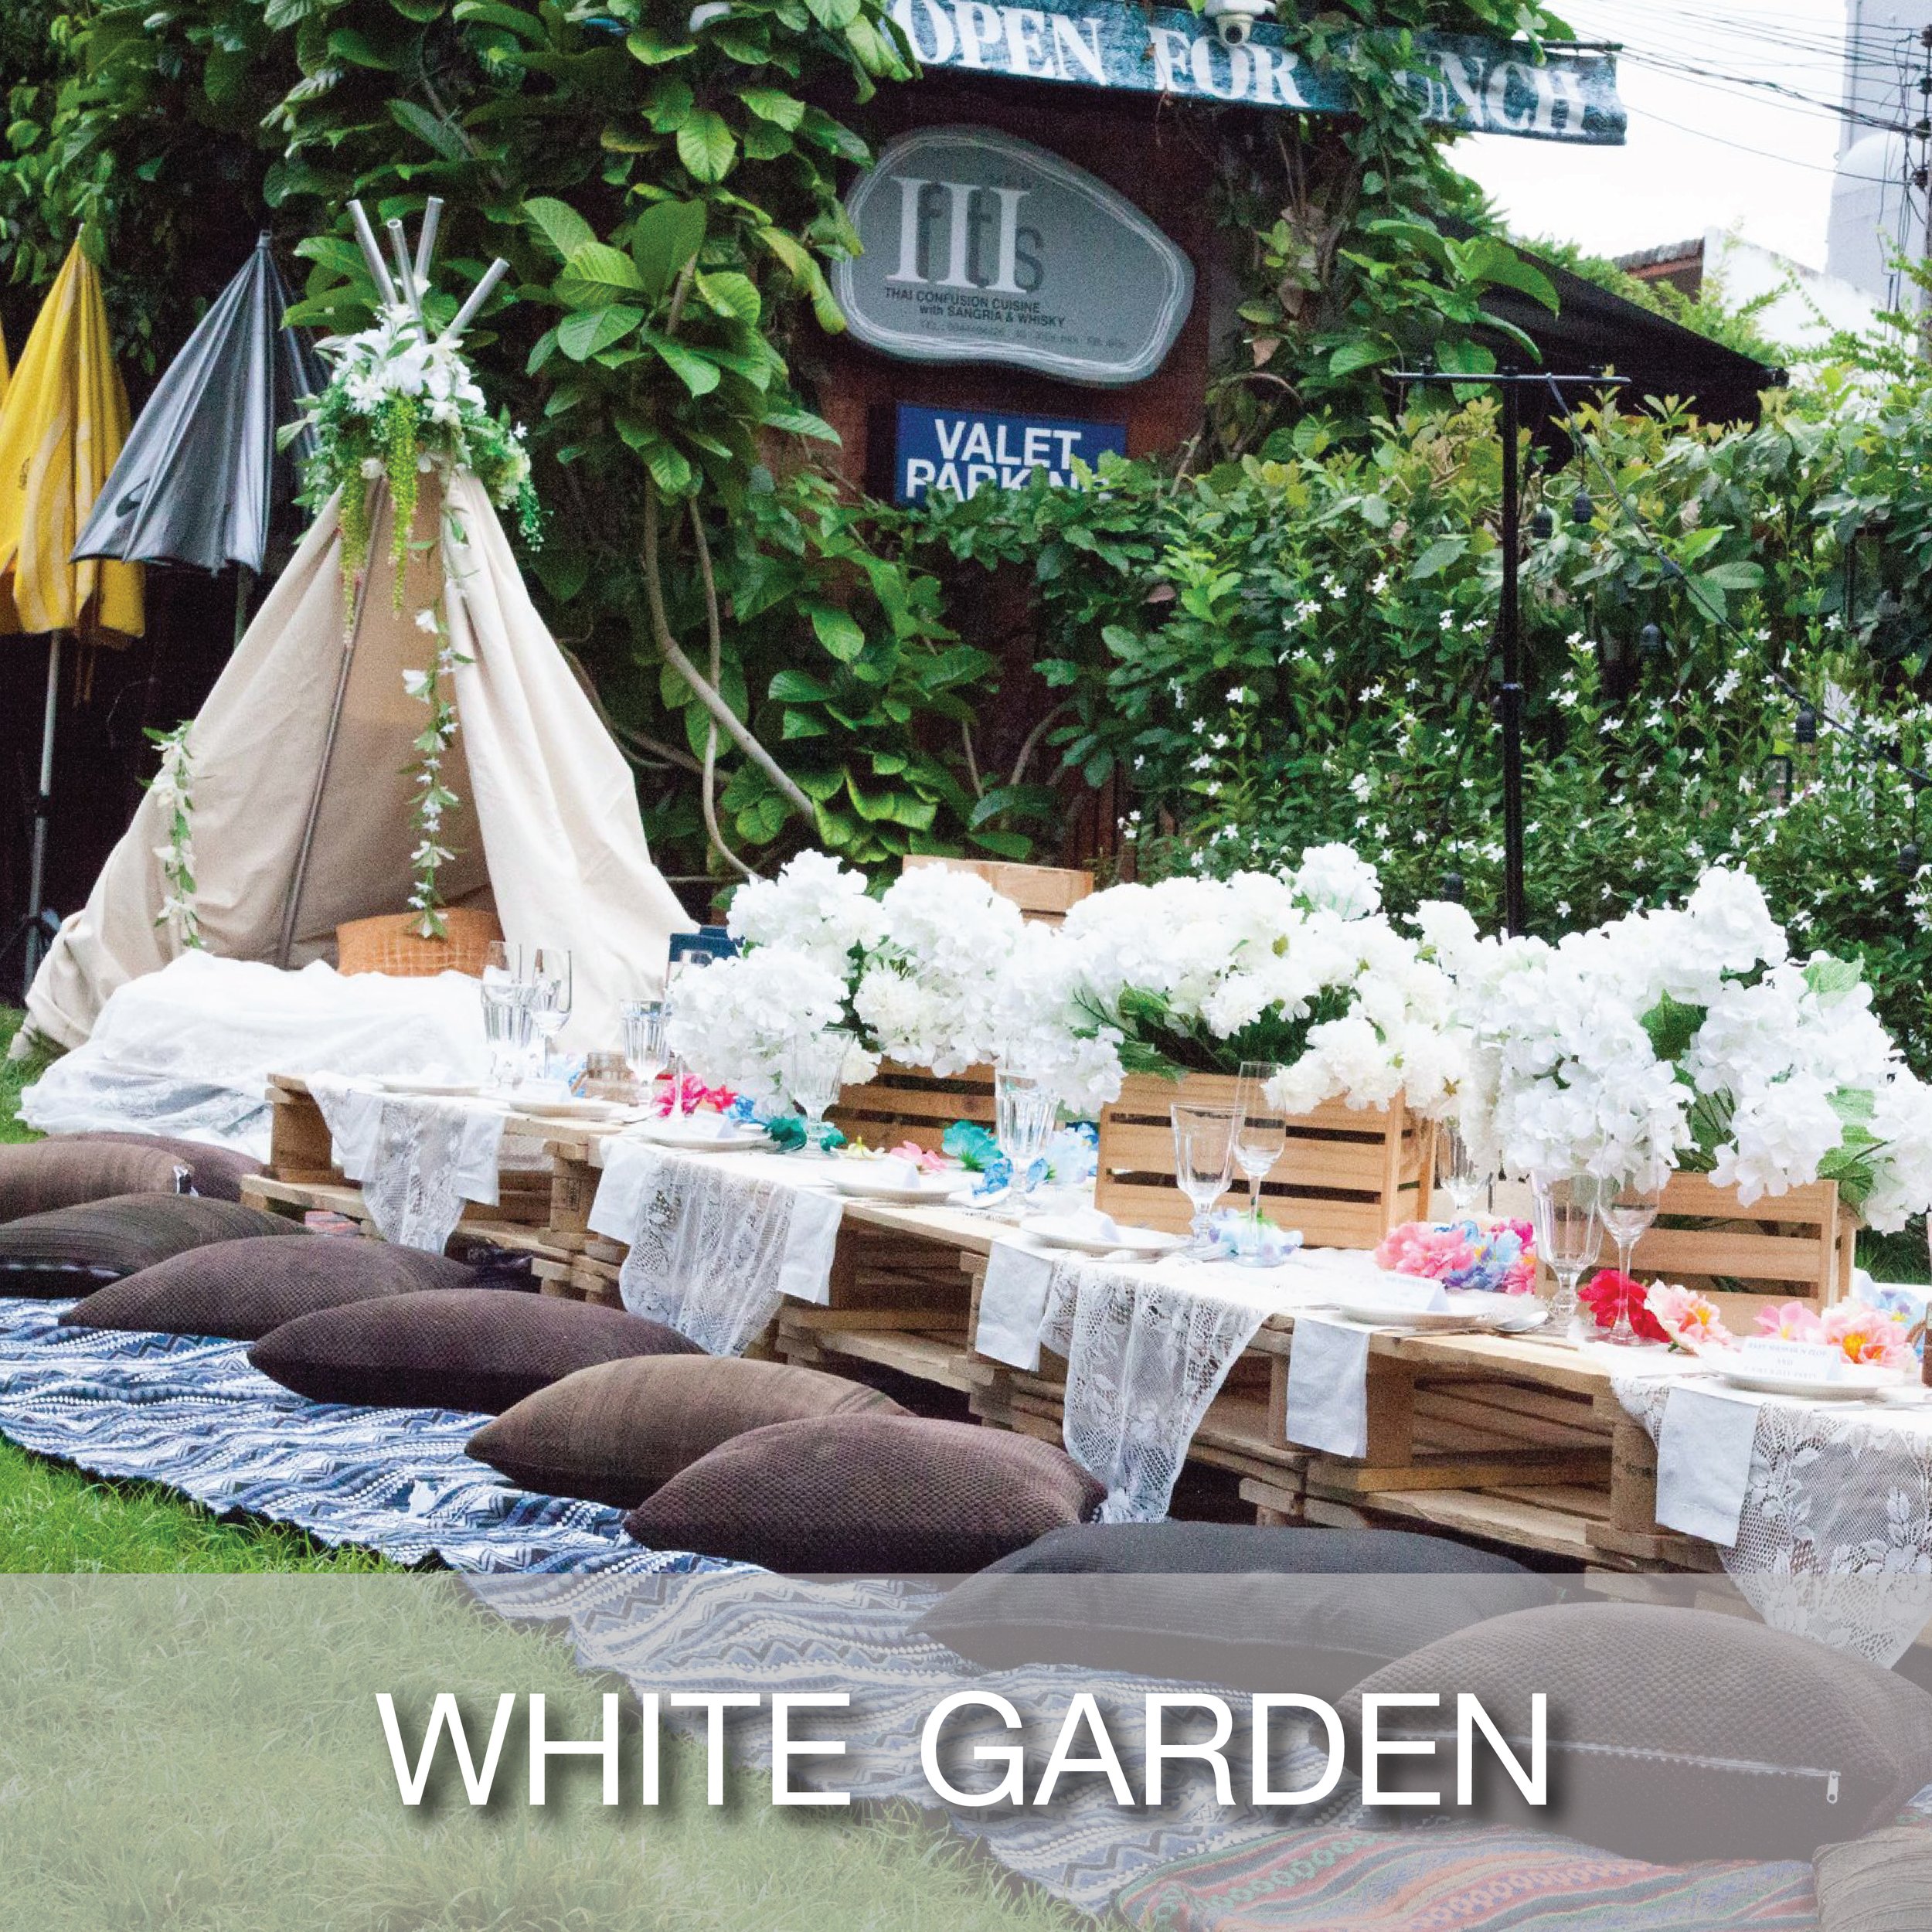 Cover_Popular Theme_White Garden-01.jpg